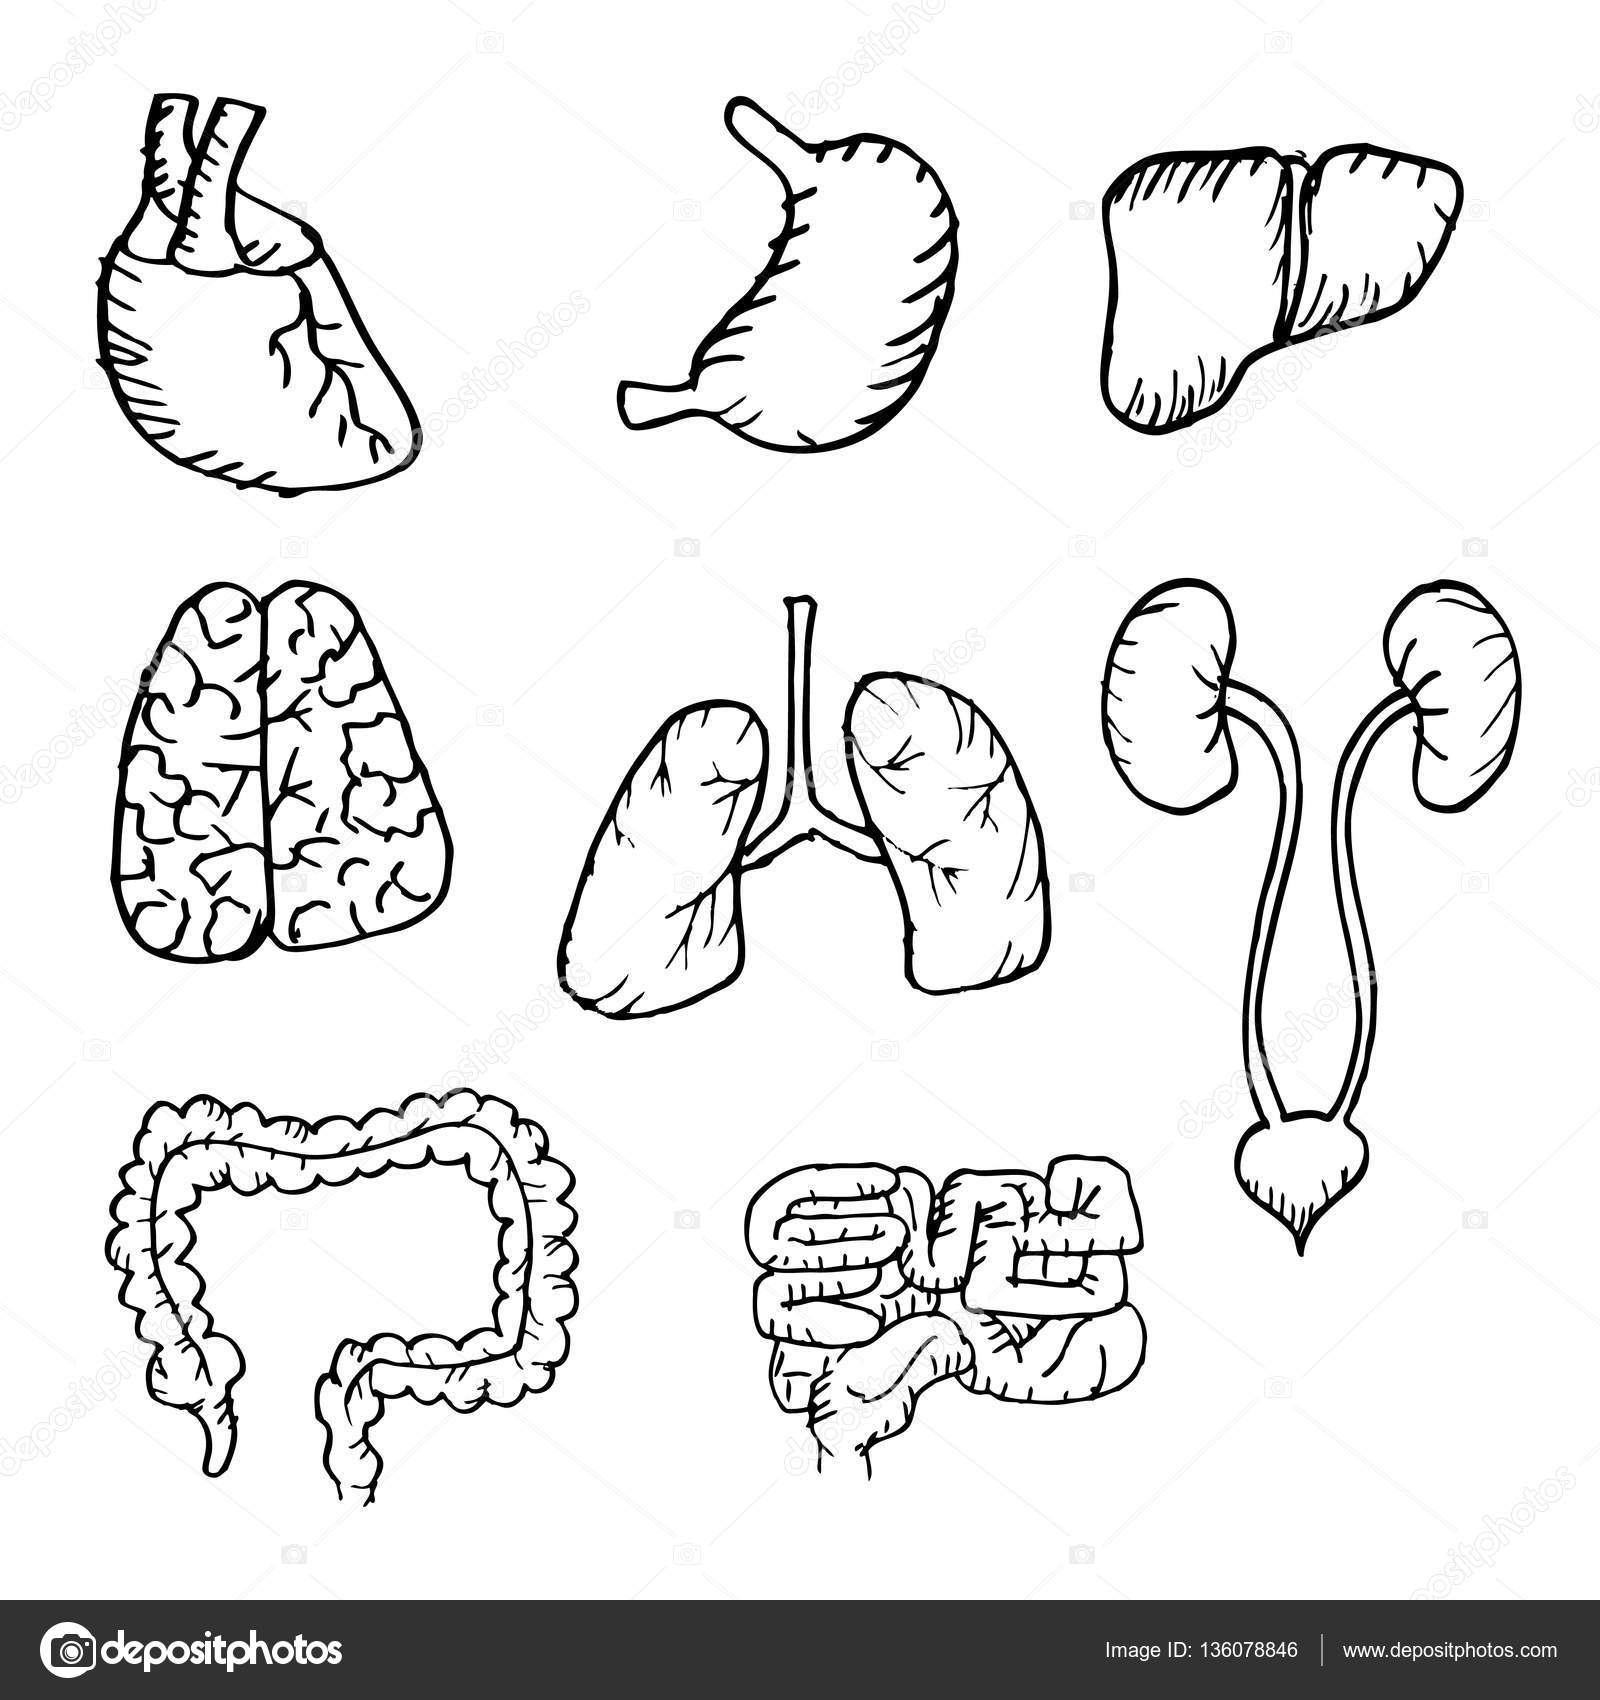 Human Organs Drawing at GetDrawings Free download